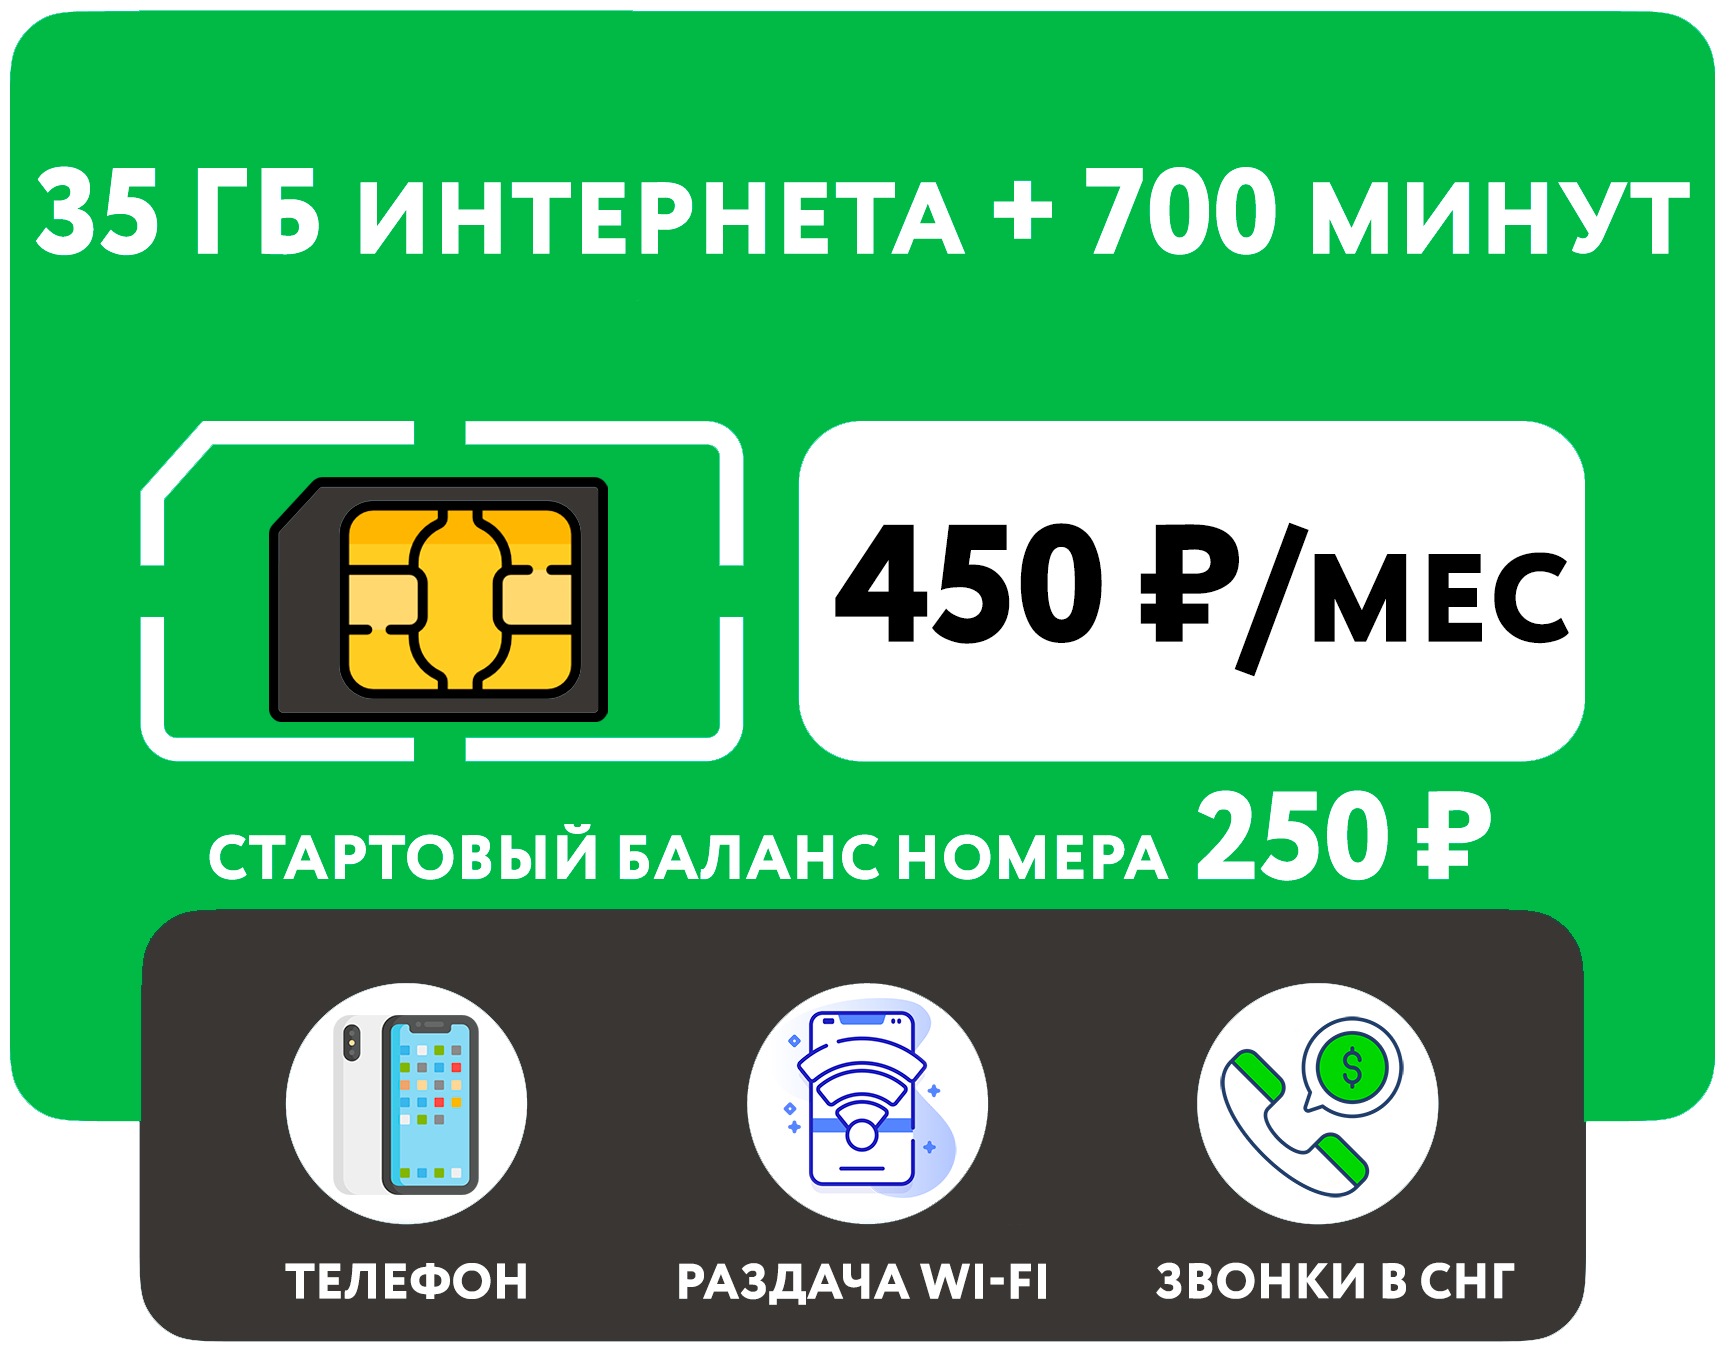 SIM-карта 700 минут + 35 гб интернета 3G/4G за 450 руб/мес (смартфон) + выгодные звонки в СНГ (Москва Московская область Россия)